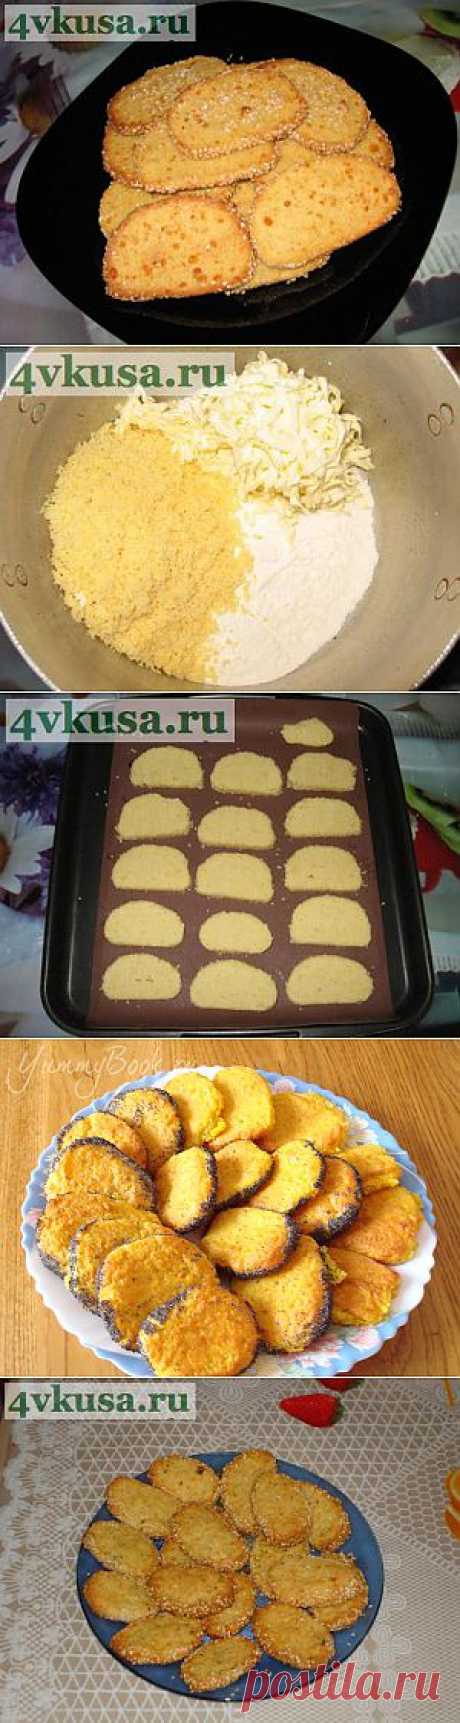 Песочное печенье с сыром и кунжутом. Фоторецепт. | 4vkusa.ru